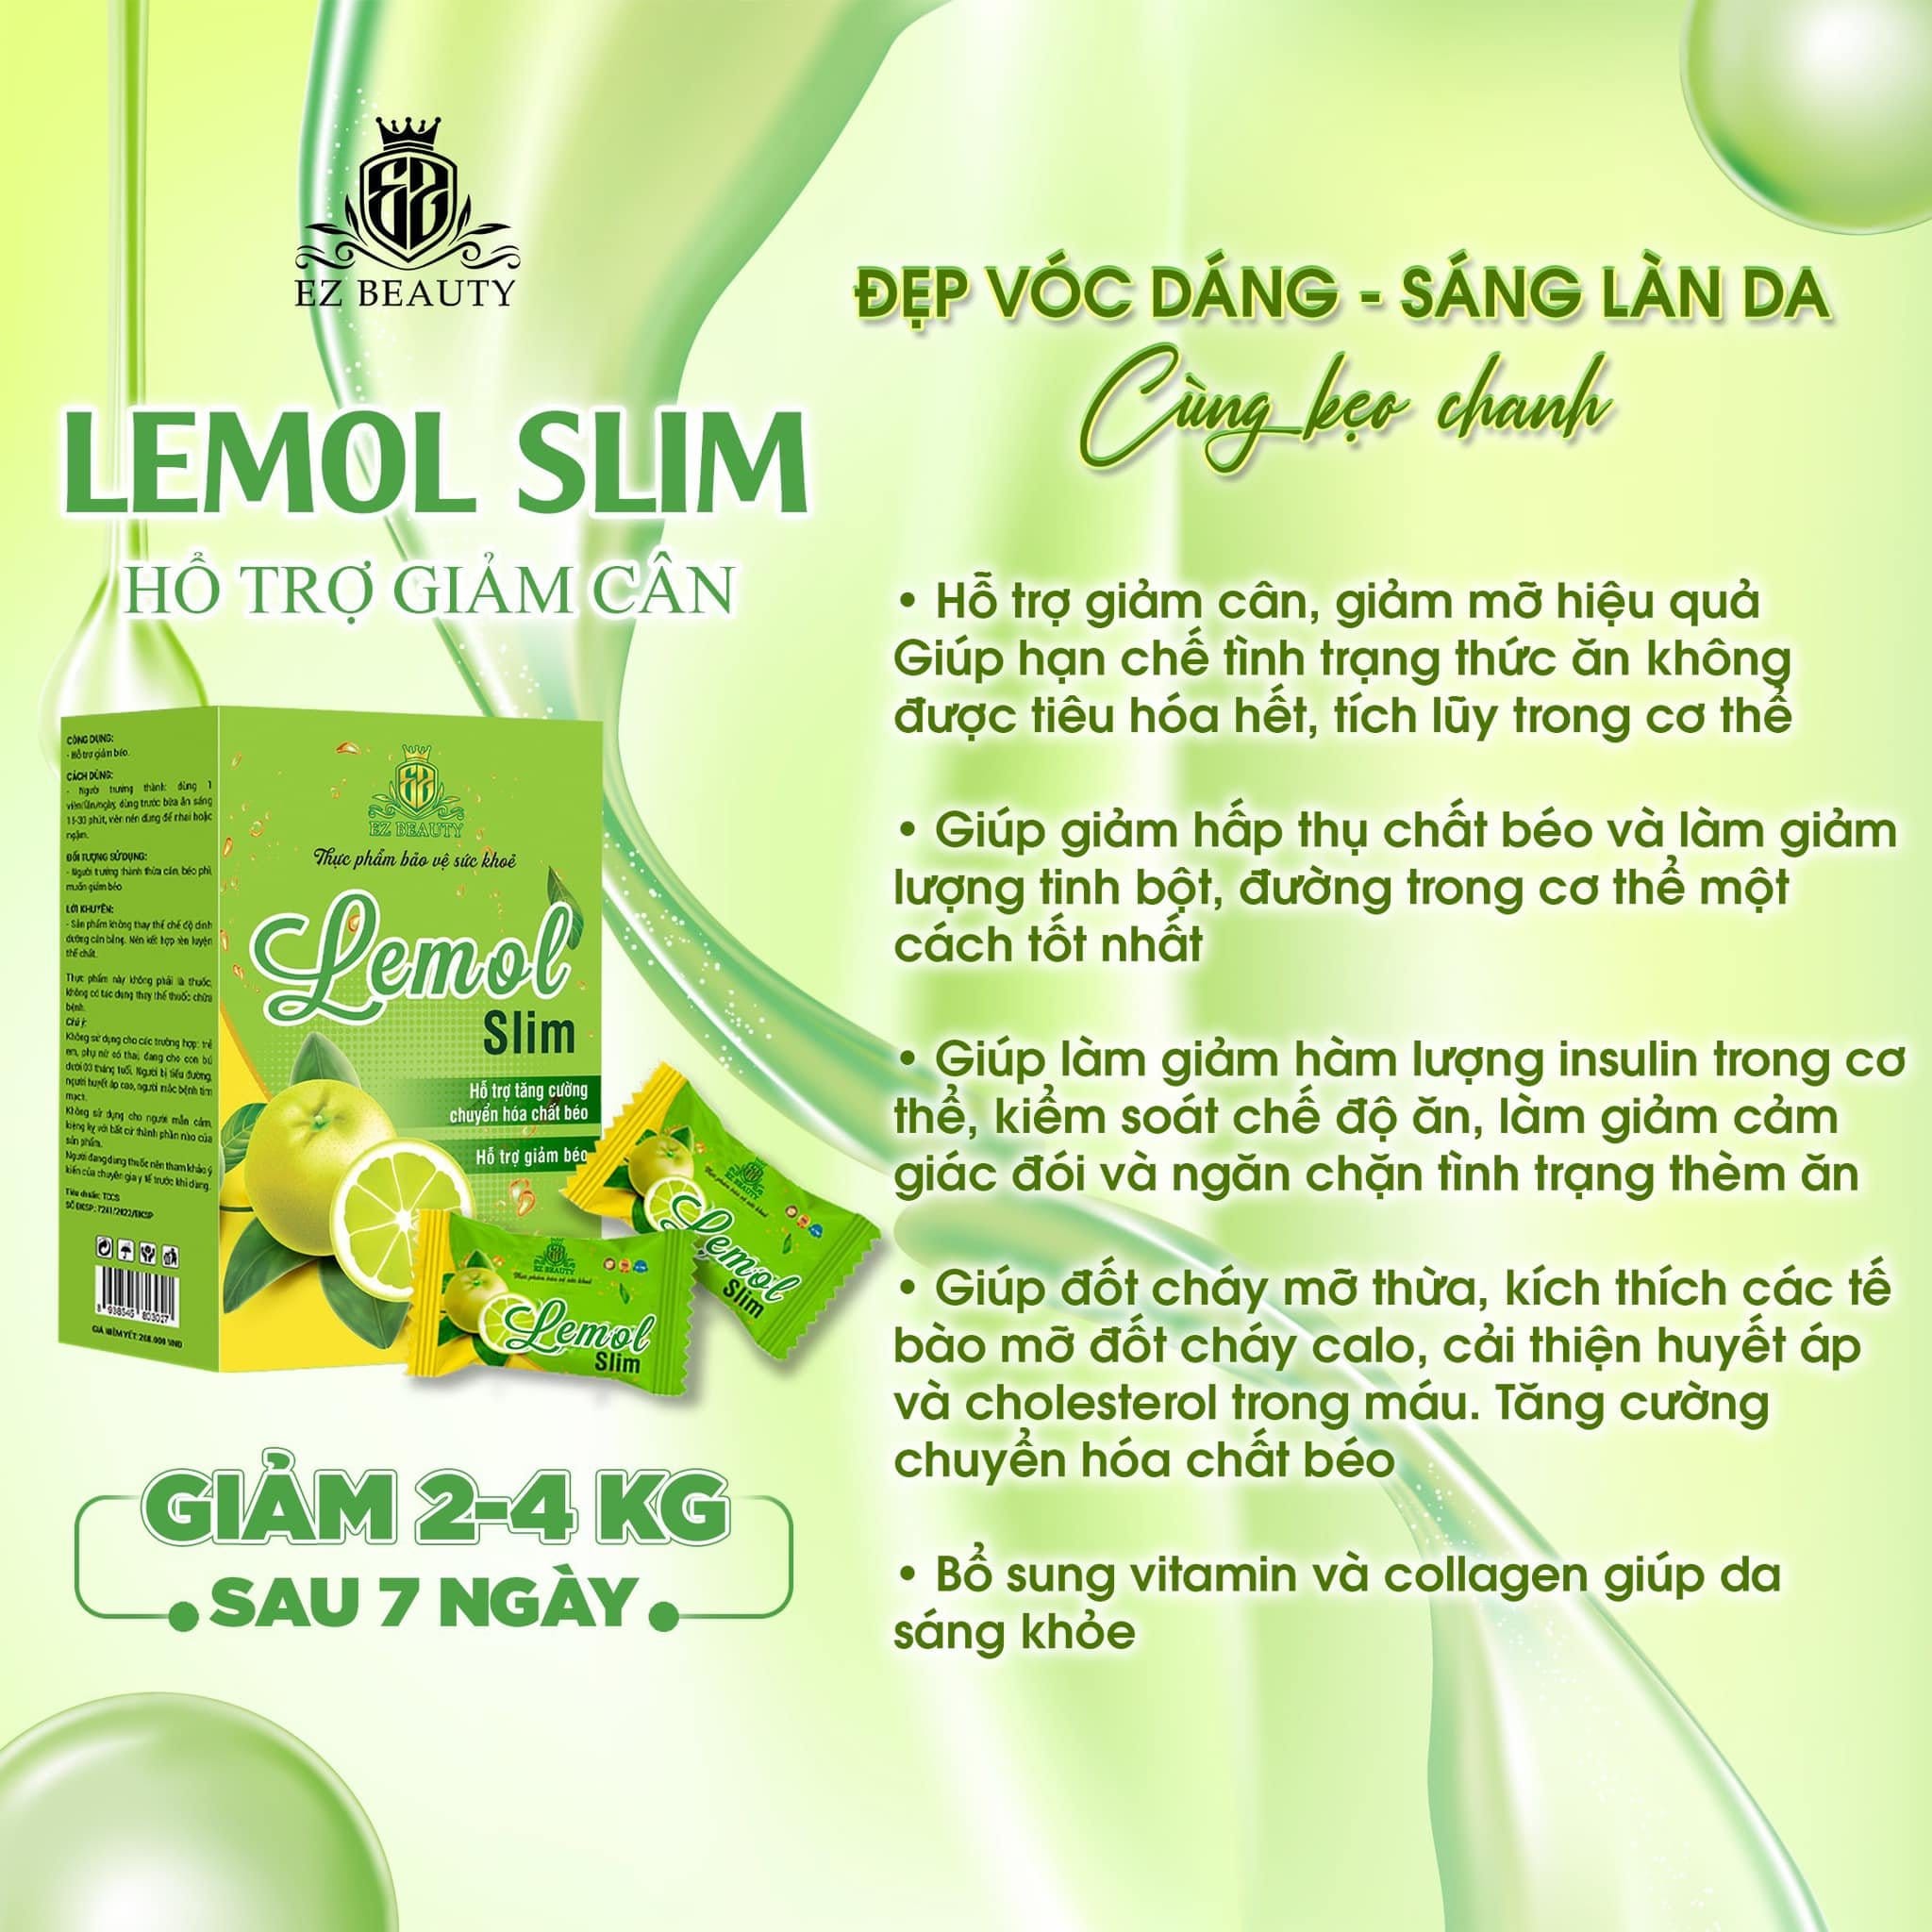 Kẹo Giảm Cân Chanh Lime Slim Ez Beauty giải pháp giảm cân an toàn cho bạn